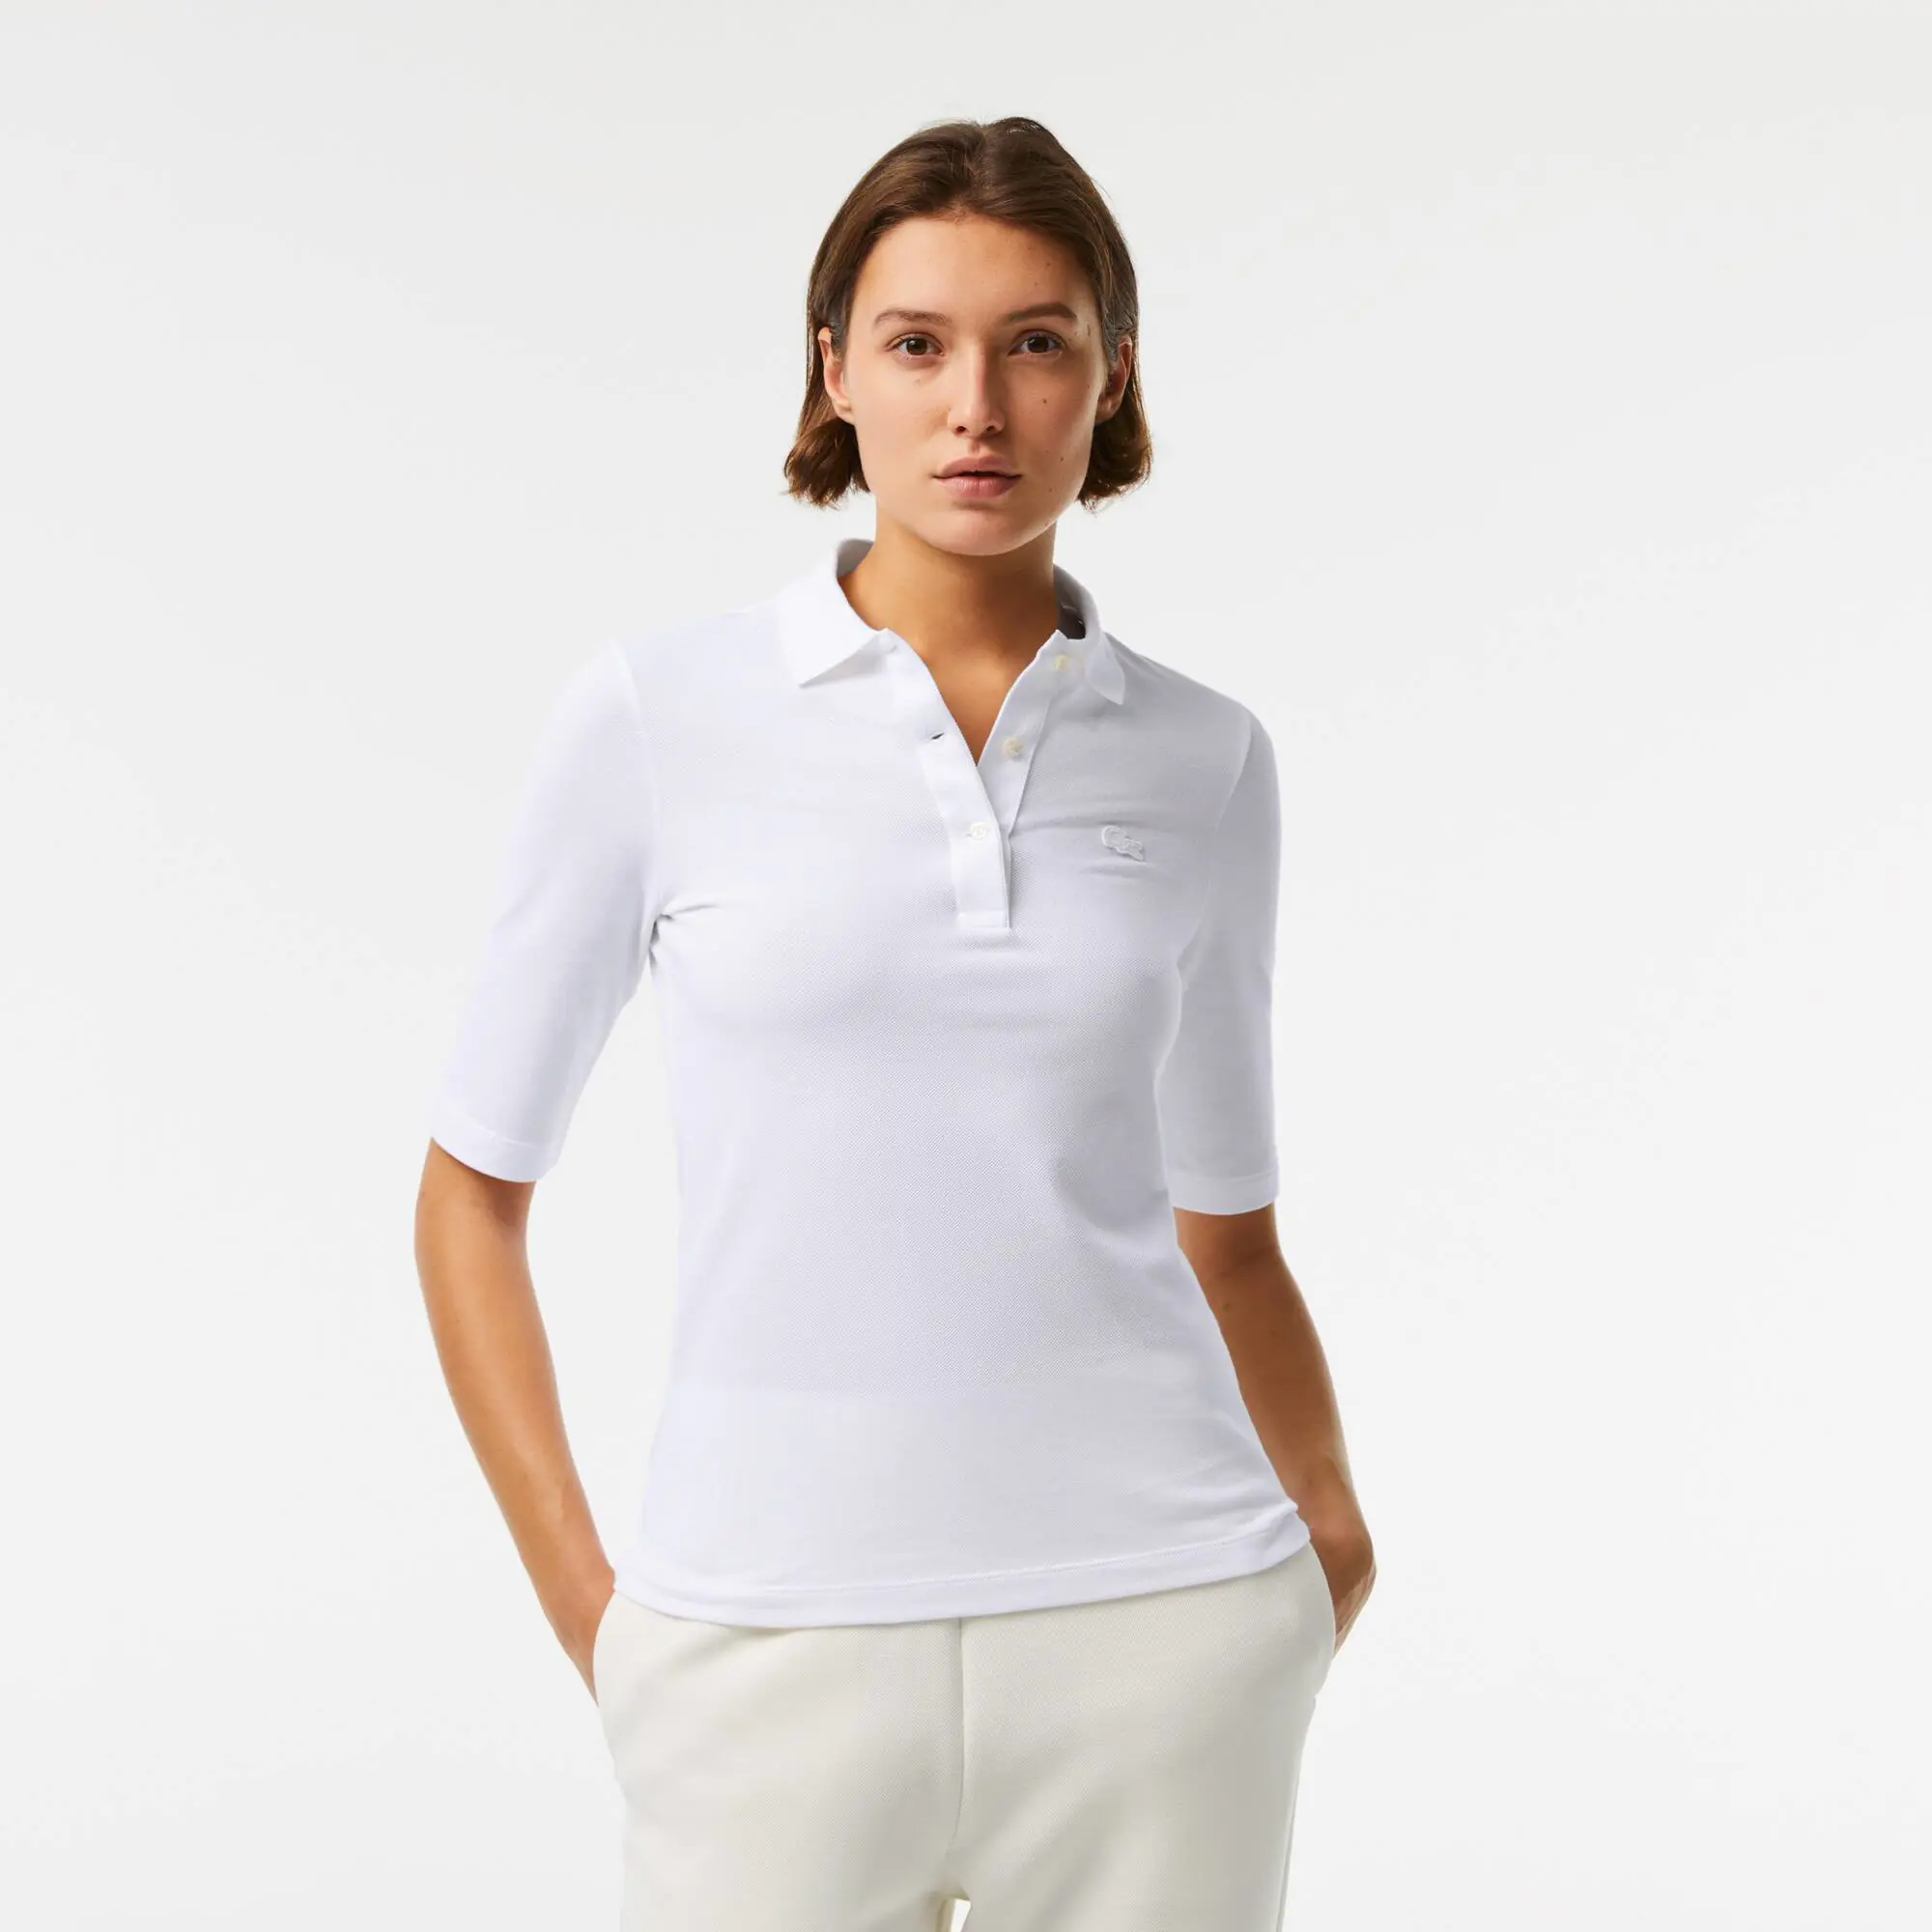 Lacoste Women's Lacoste Slim Fit Supple Cotton Polo Shirt. 1